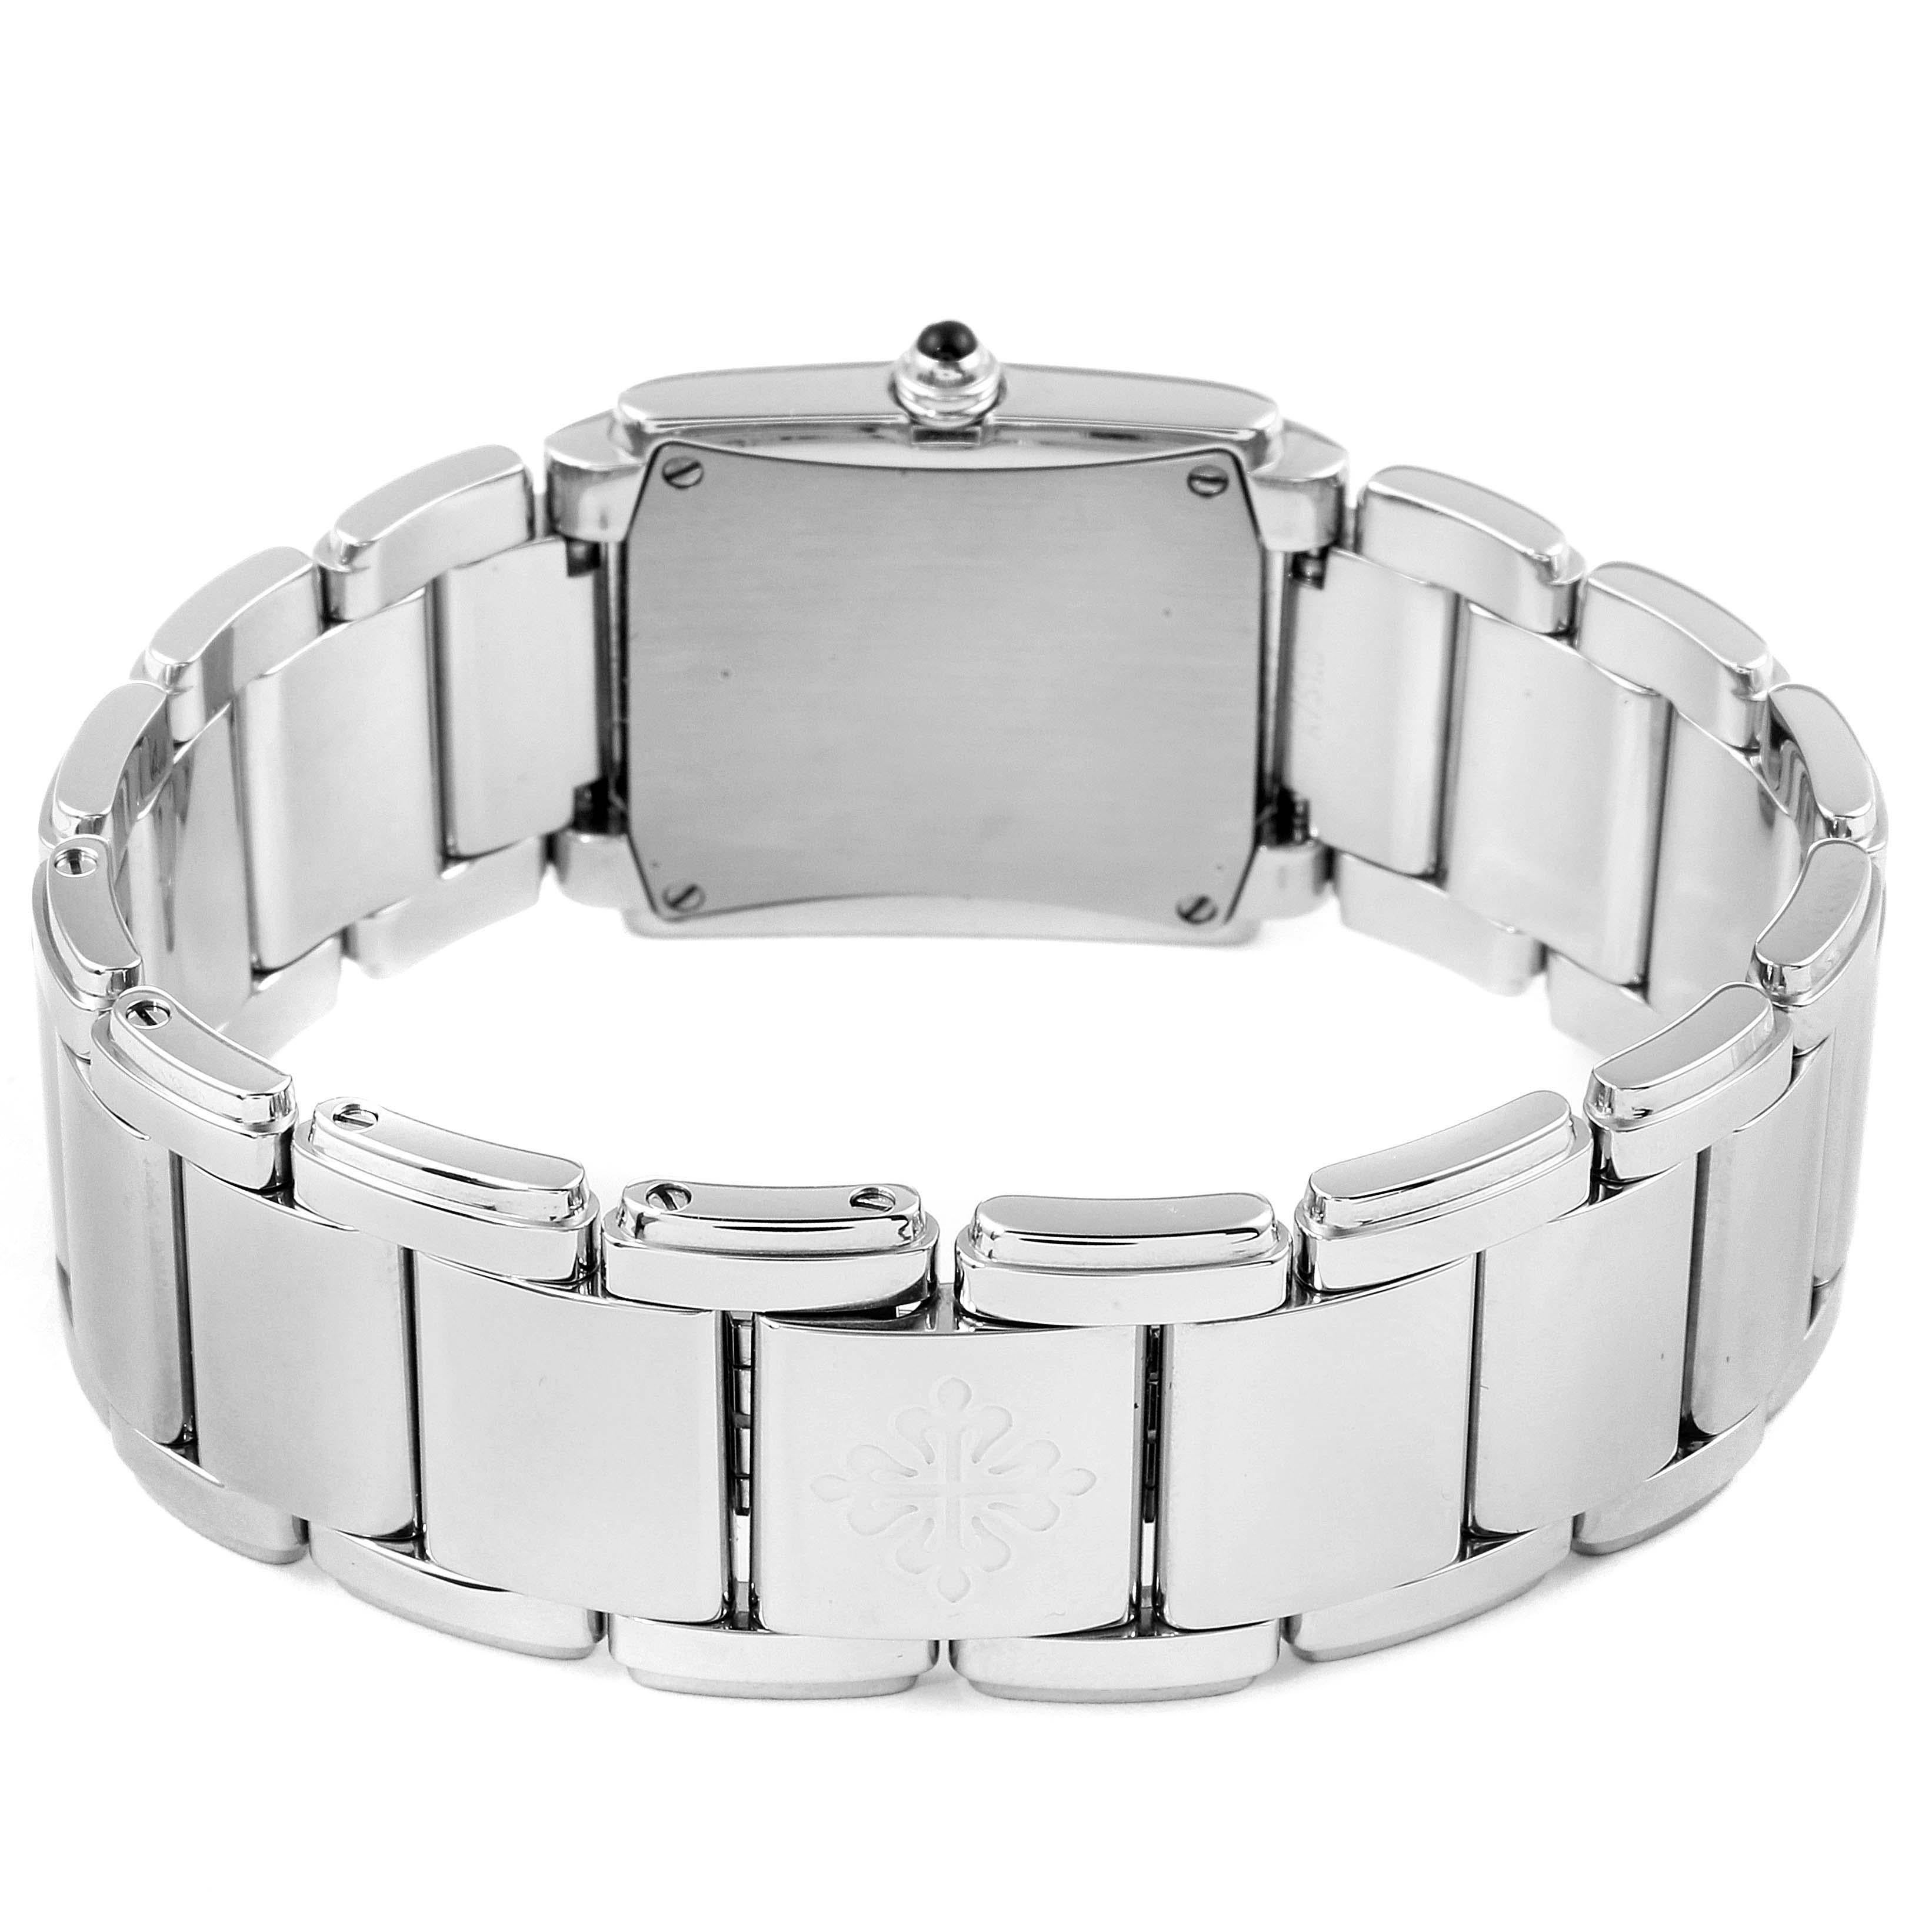 Patek Philippe Twenty-4 Grey Diamond Dial Steel Ladies Watch 4910 5